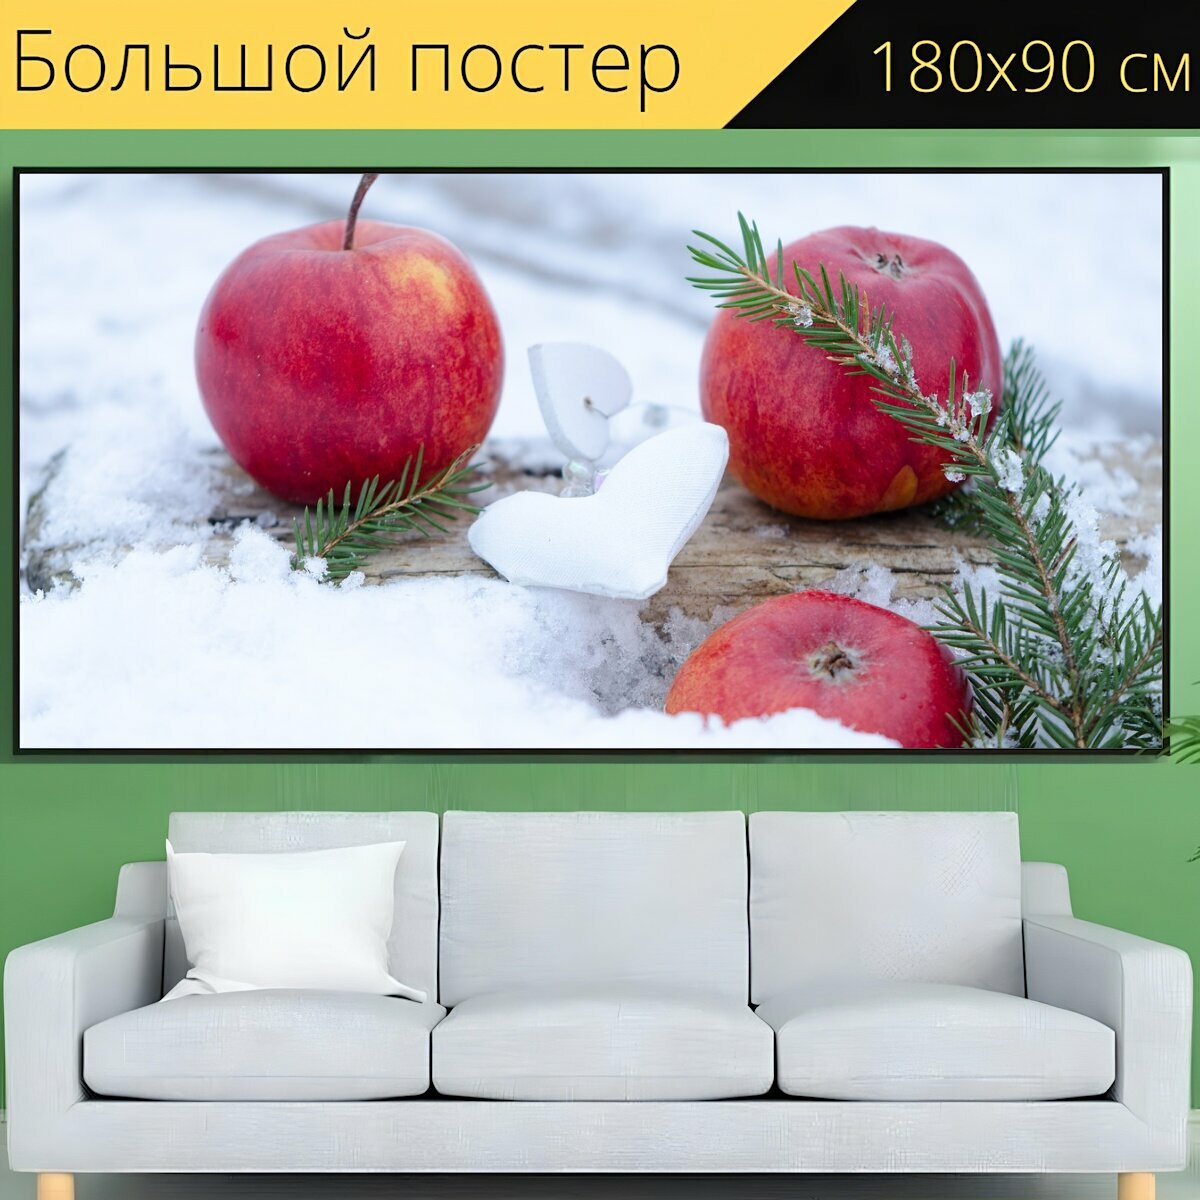 Большой постер "Яблоко, красное яблоко, фрукты" 180 x 90 см. для интерьера